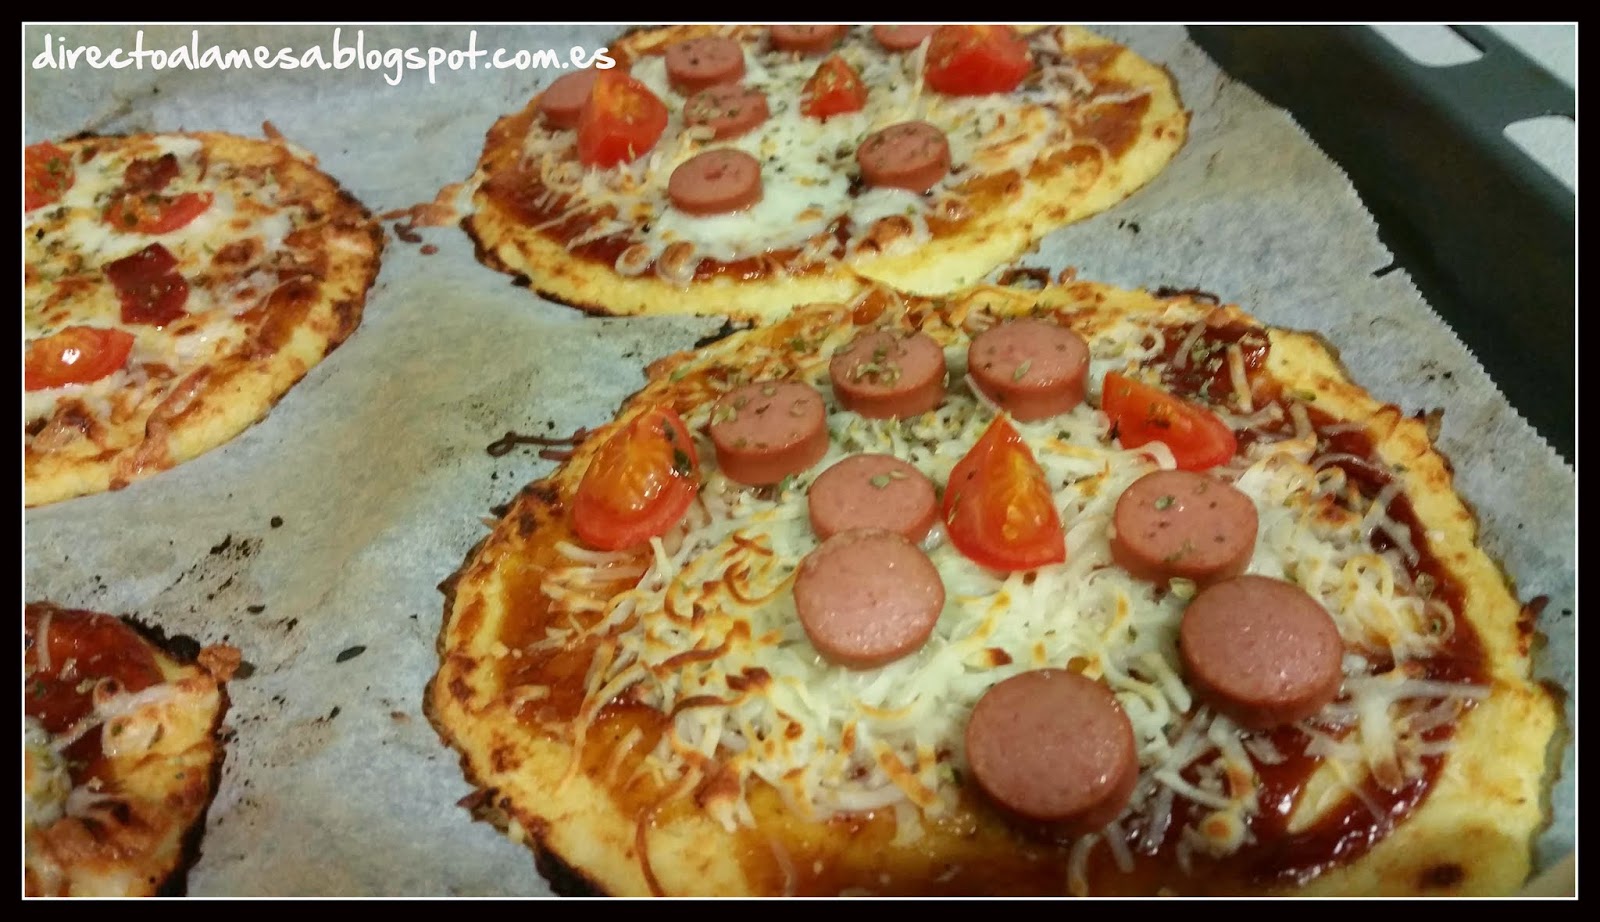 http://directoalamesa.blogspot.com.es/2015/04/masa-de-pizza-de-coliflor.html